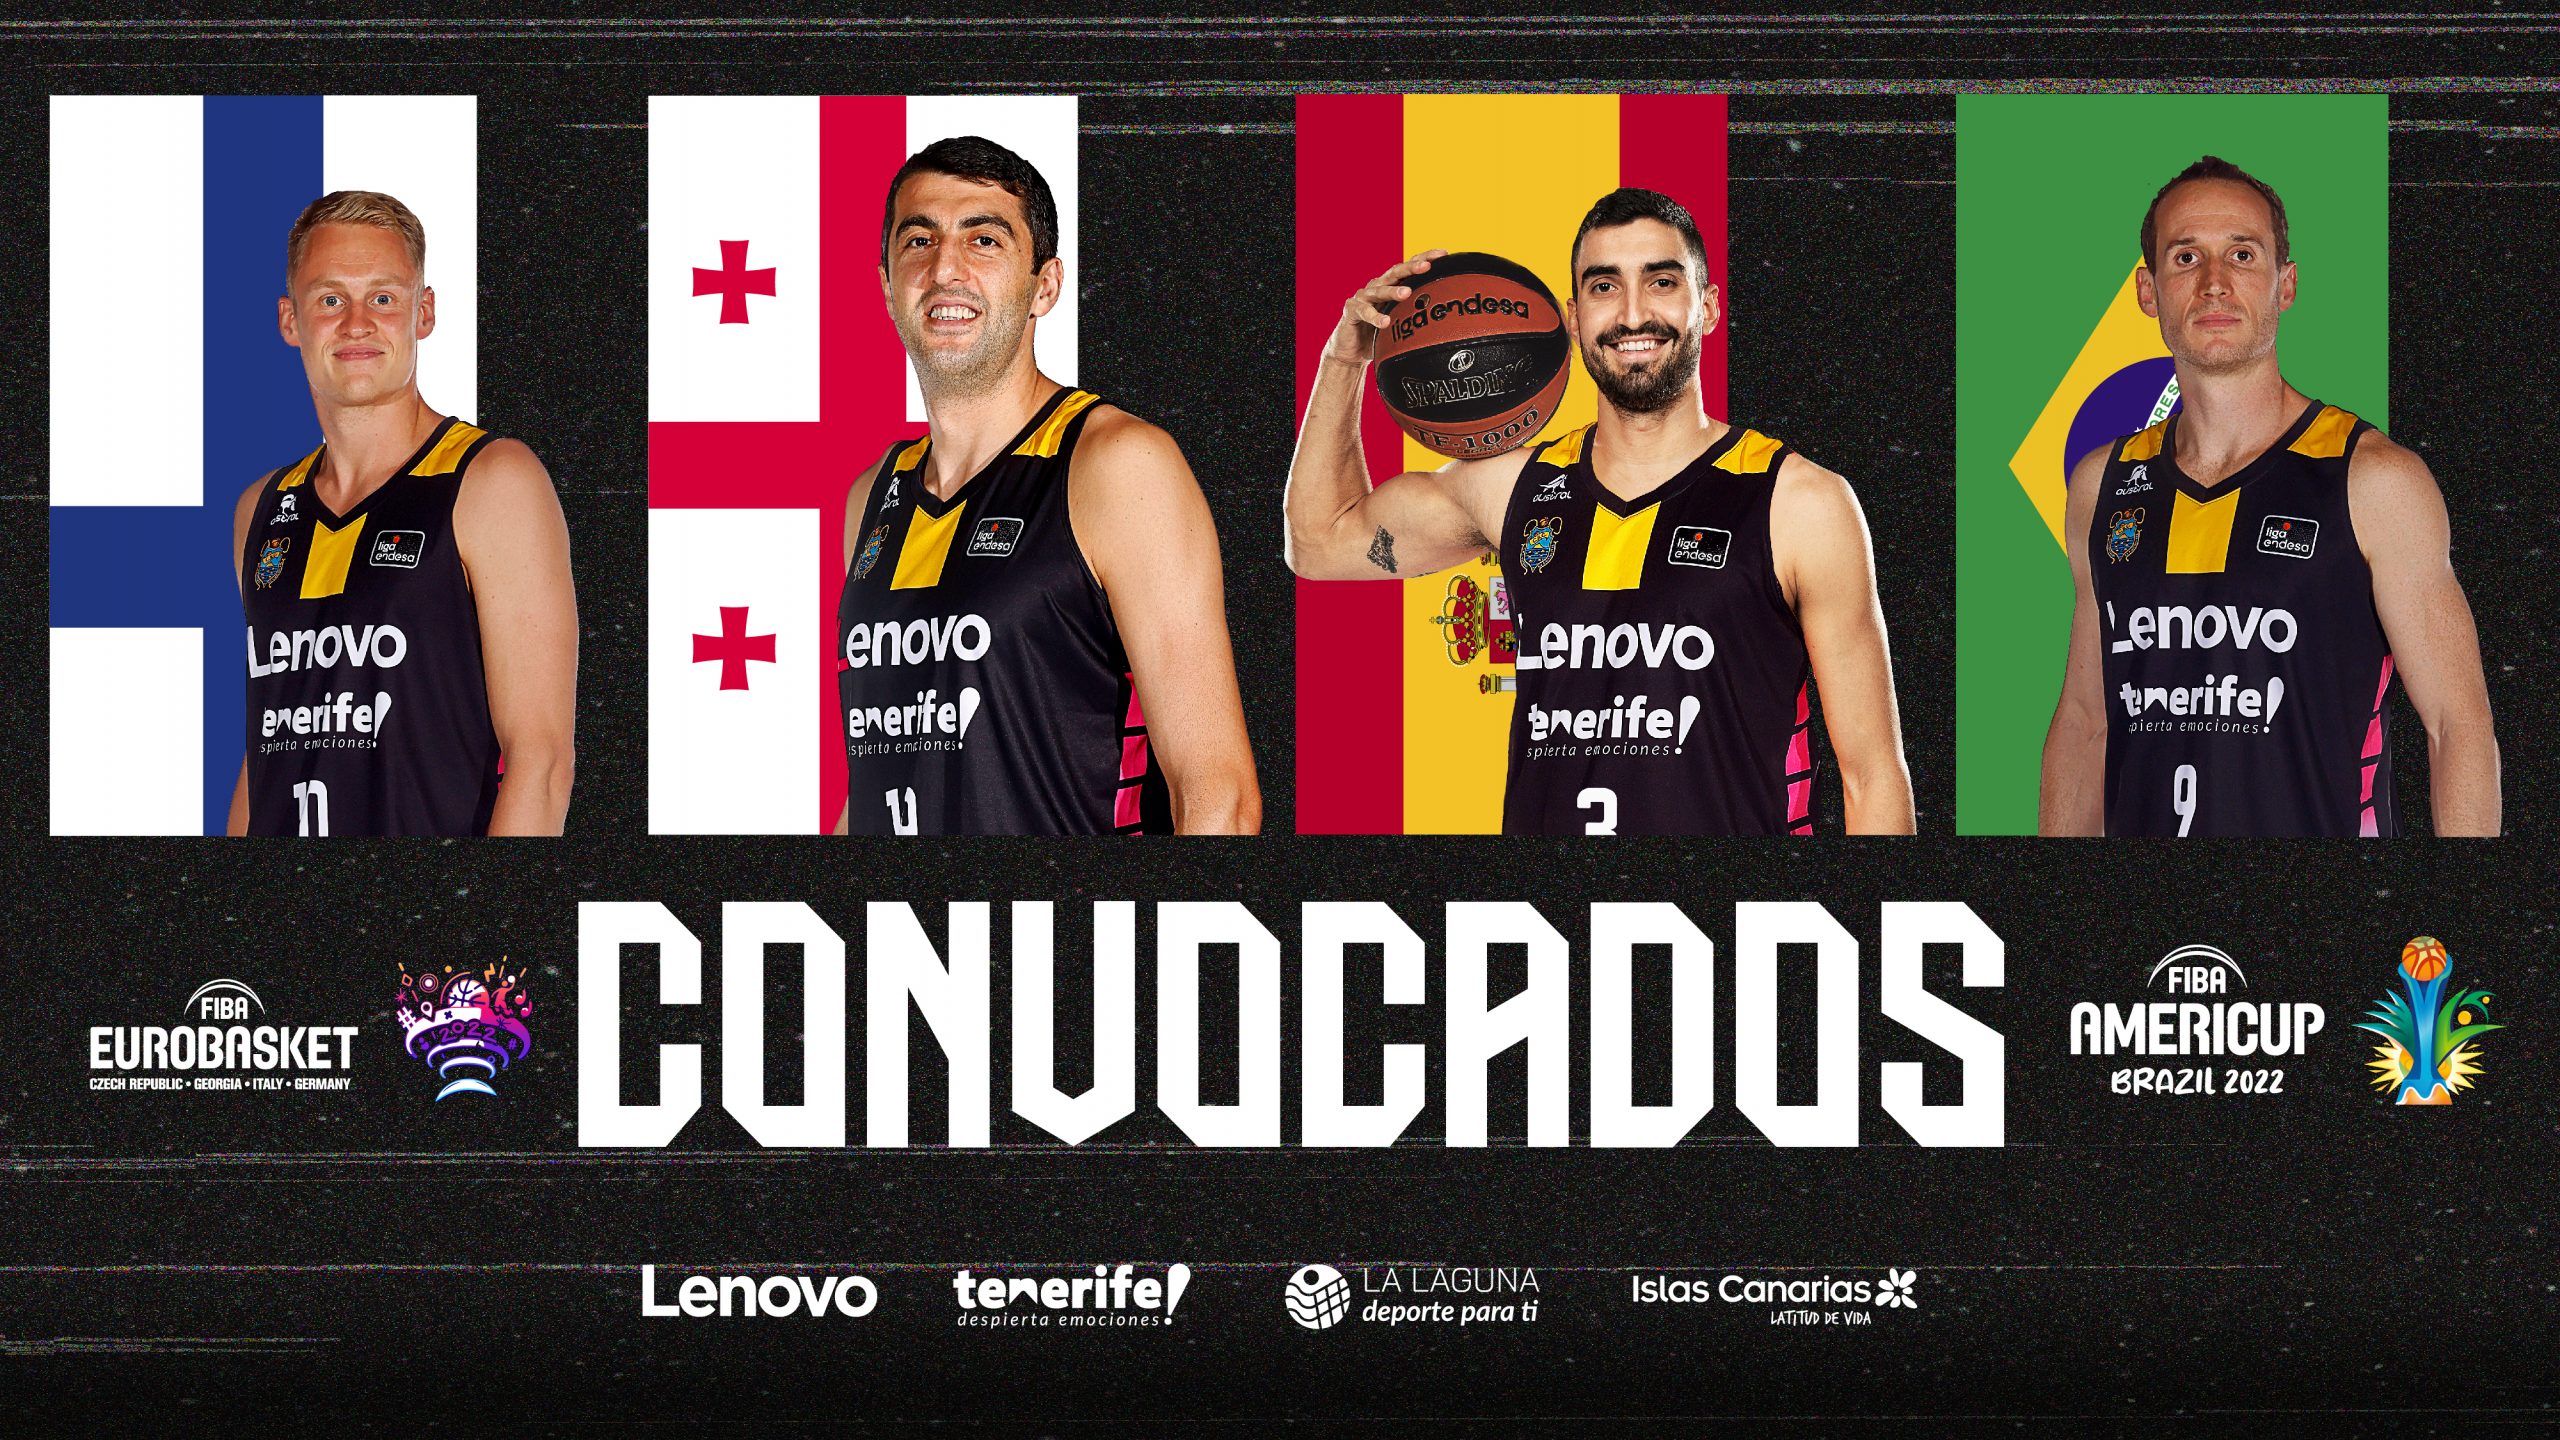 Cuatro aurinegros, convocados para el Eurobasket y la América Cup